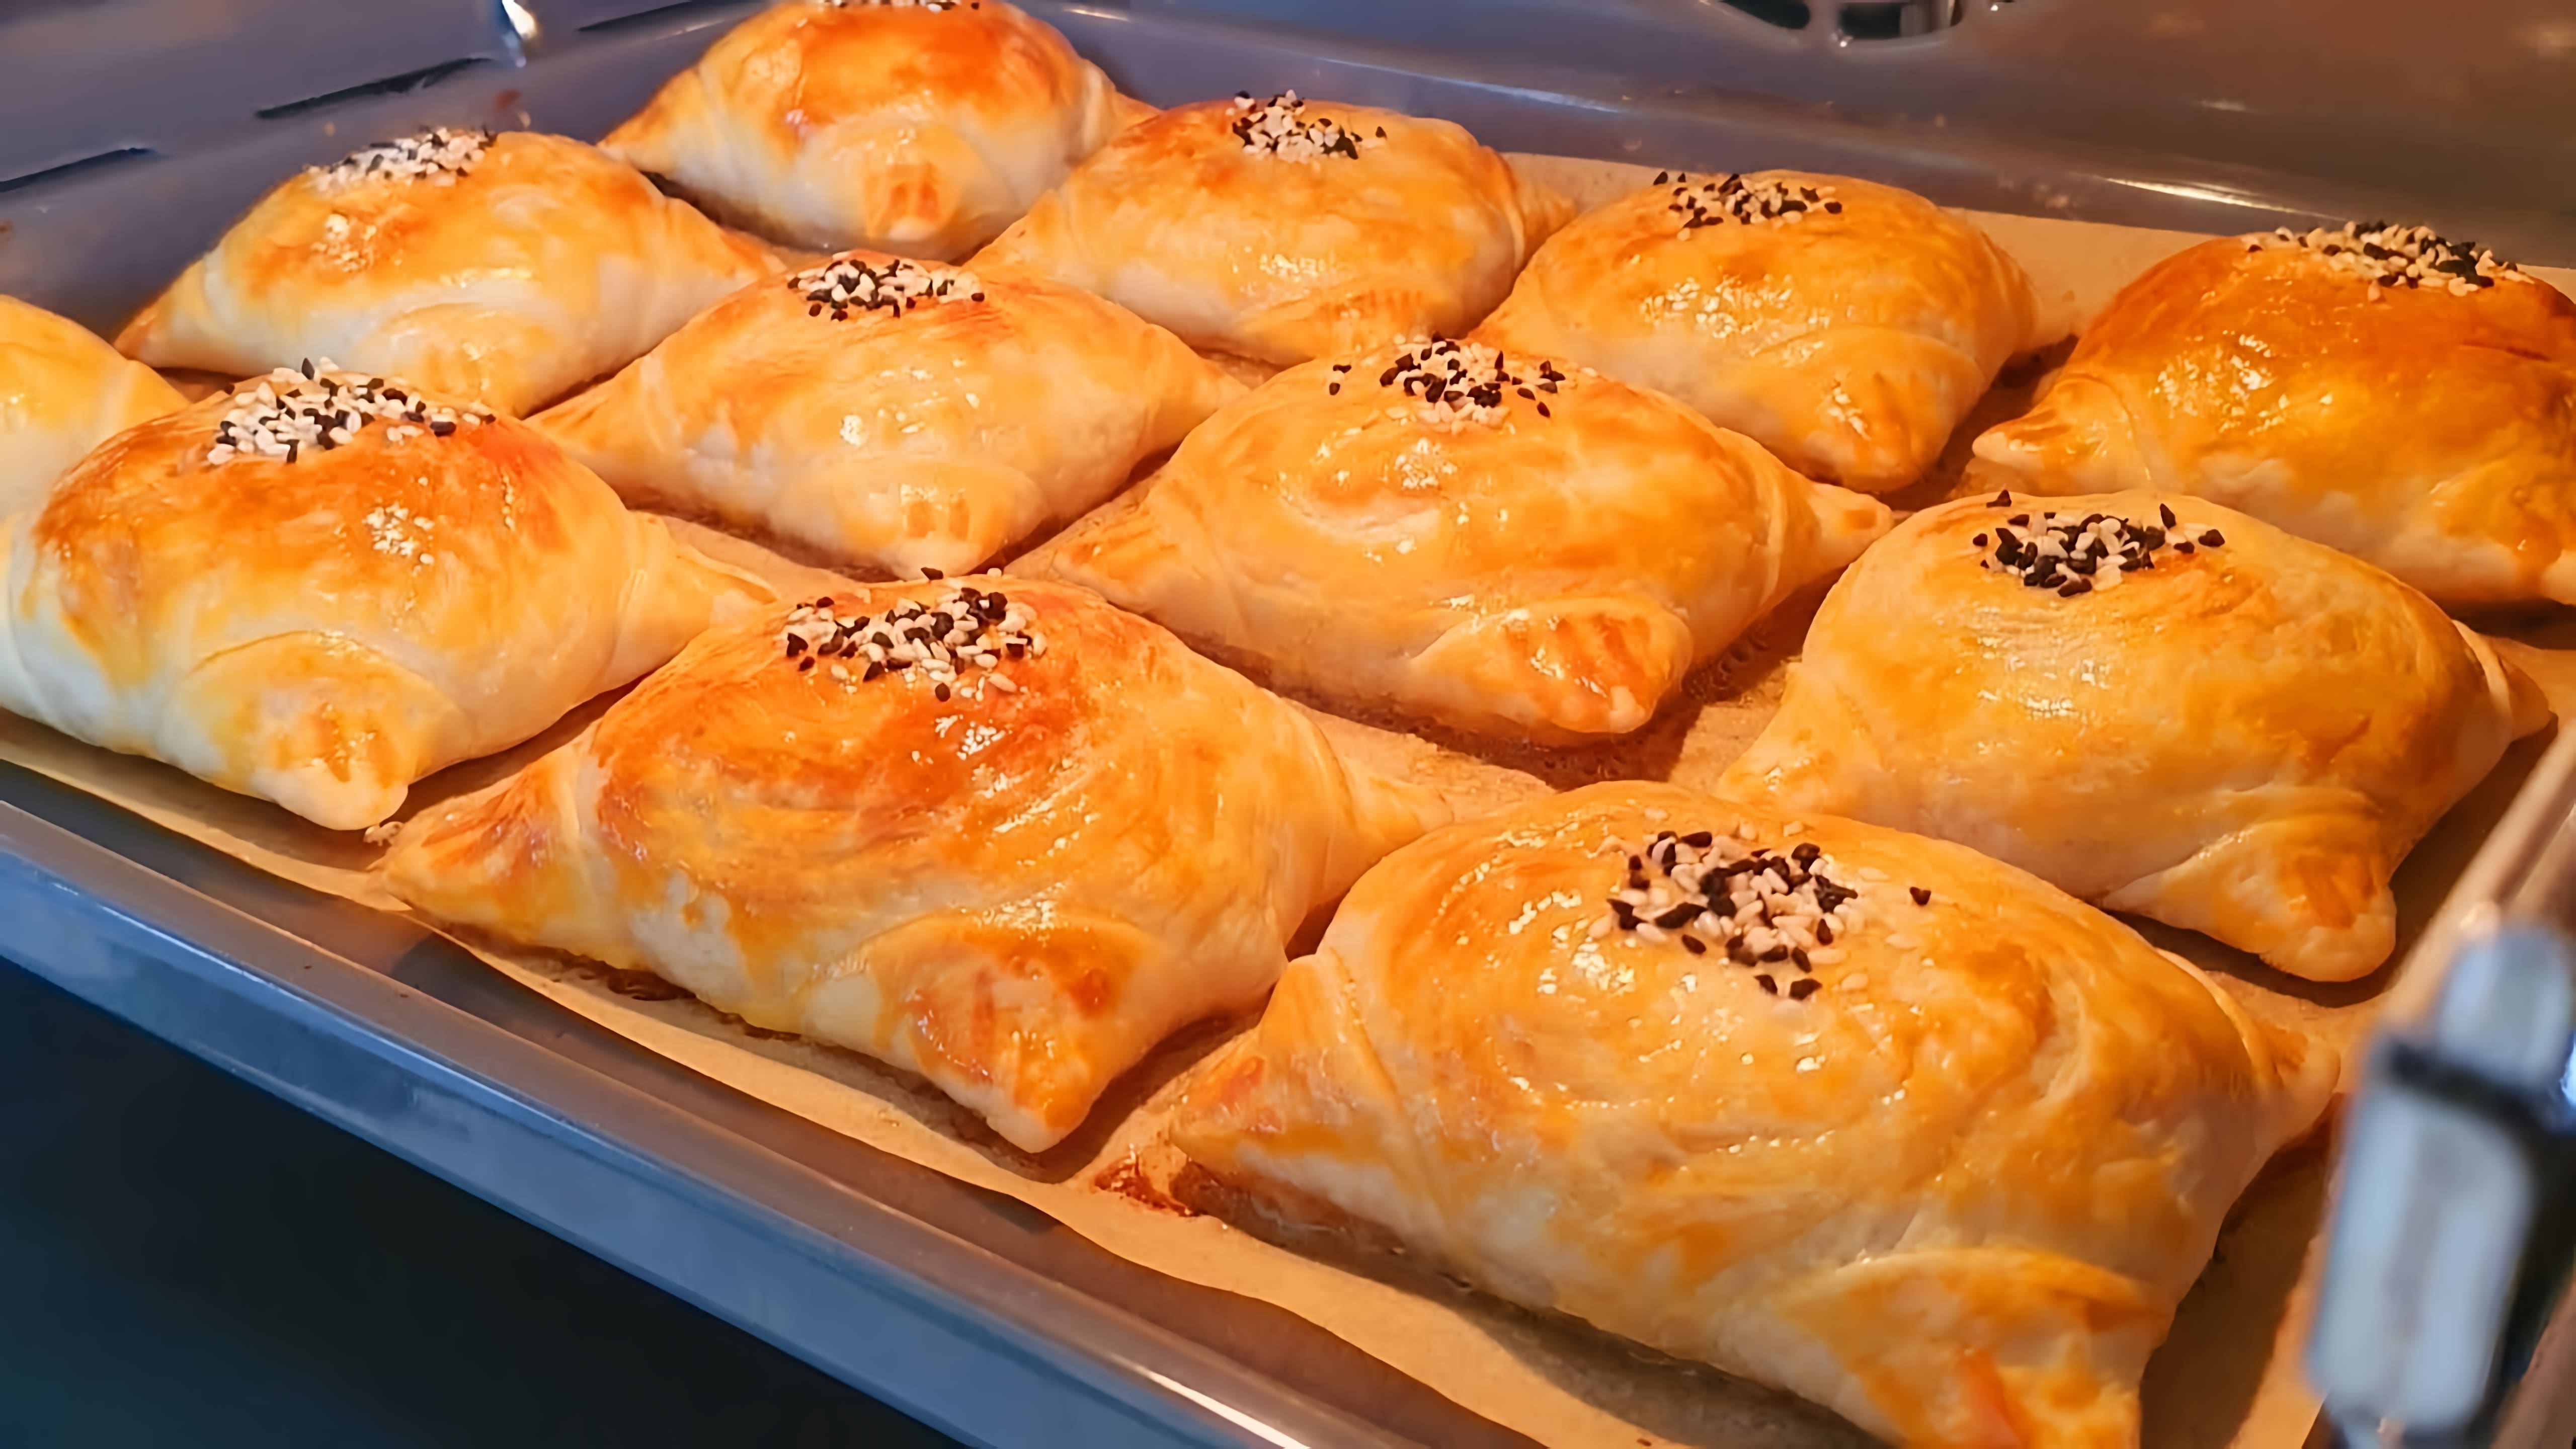 В этом видео демонстрируется процесс приготовления пазанды - традиционного узбекского блюда